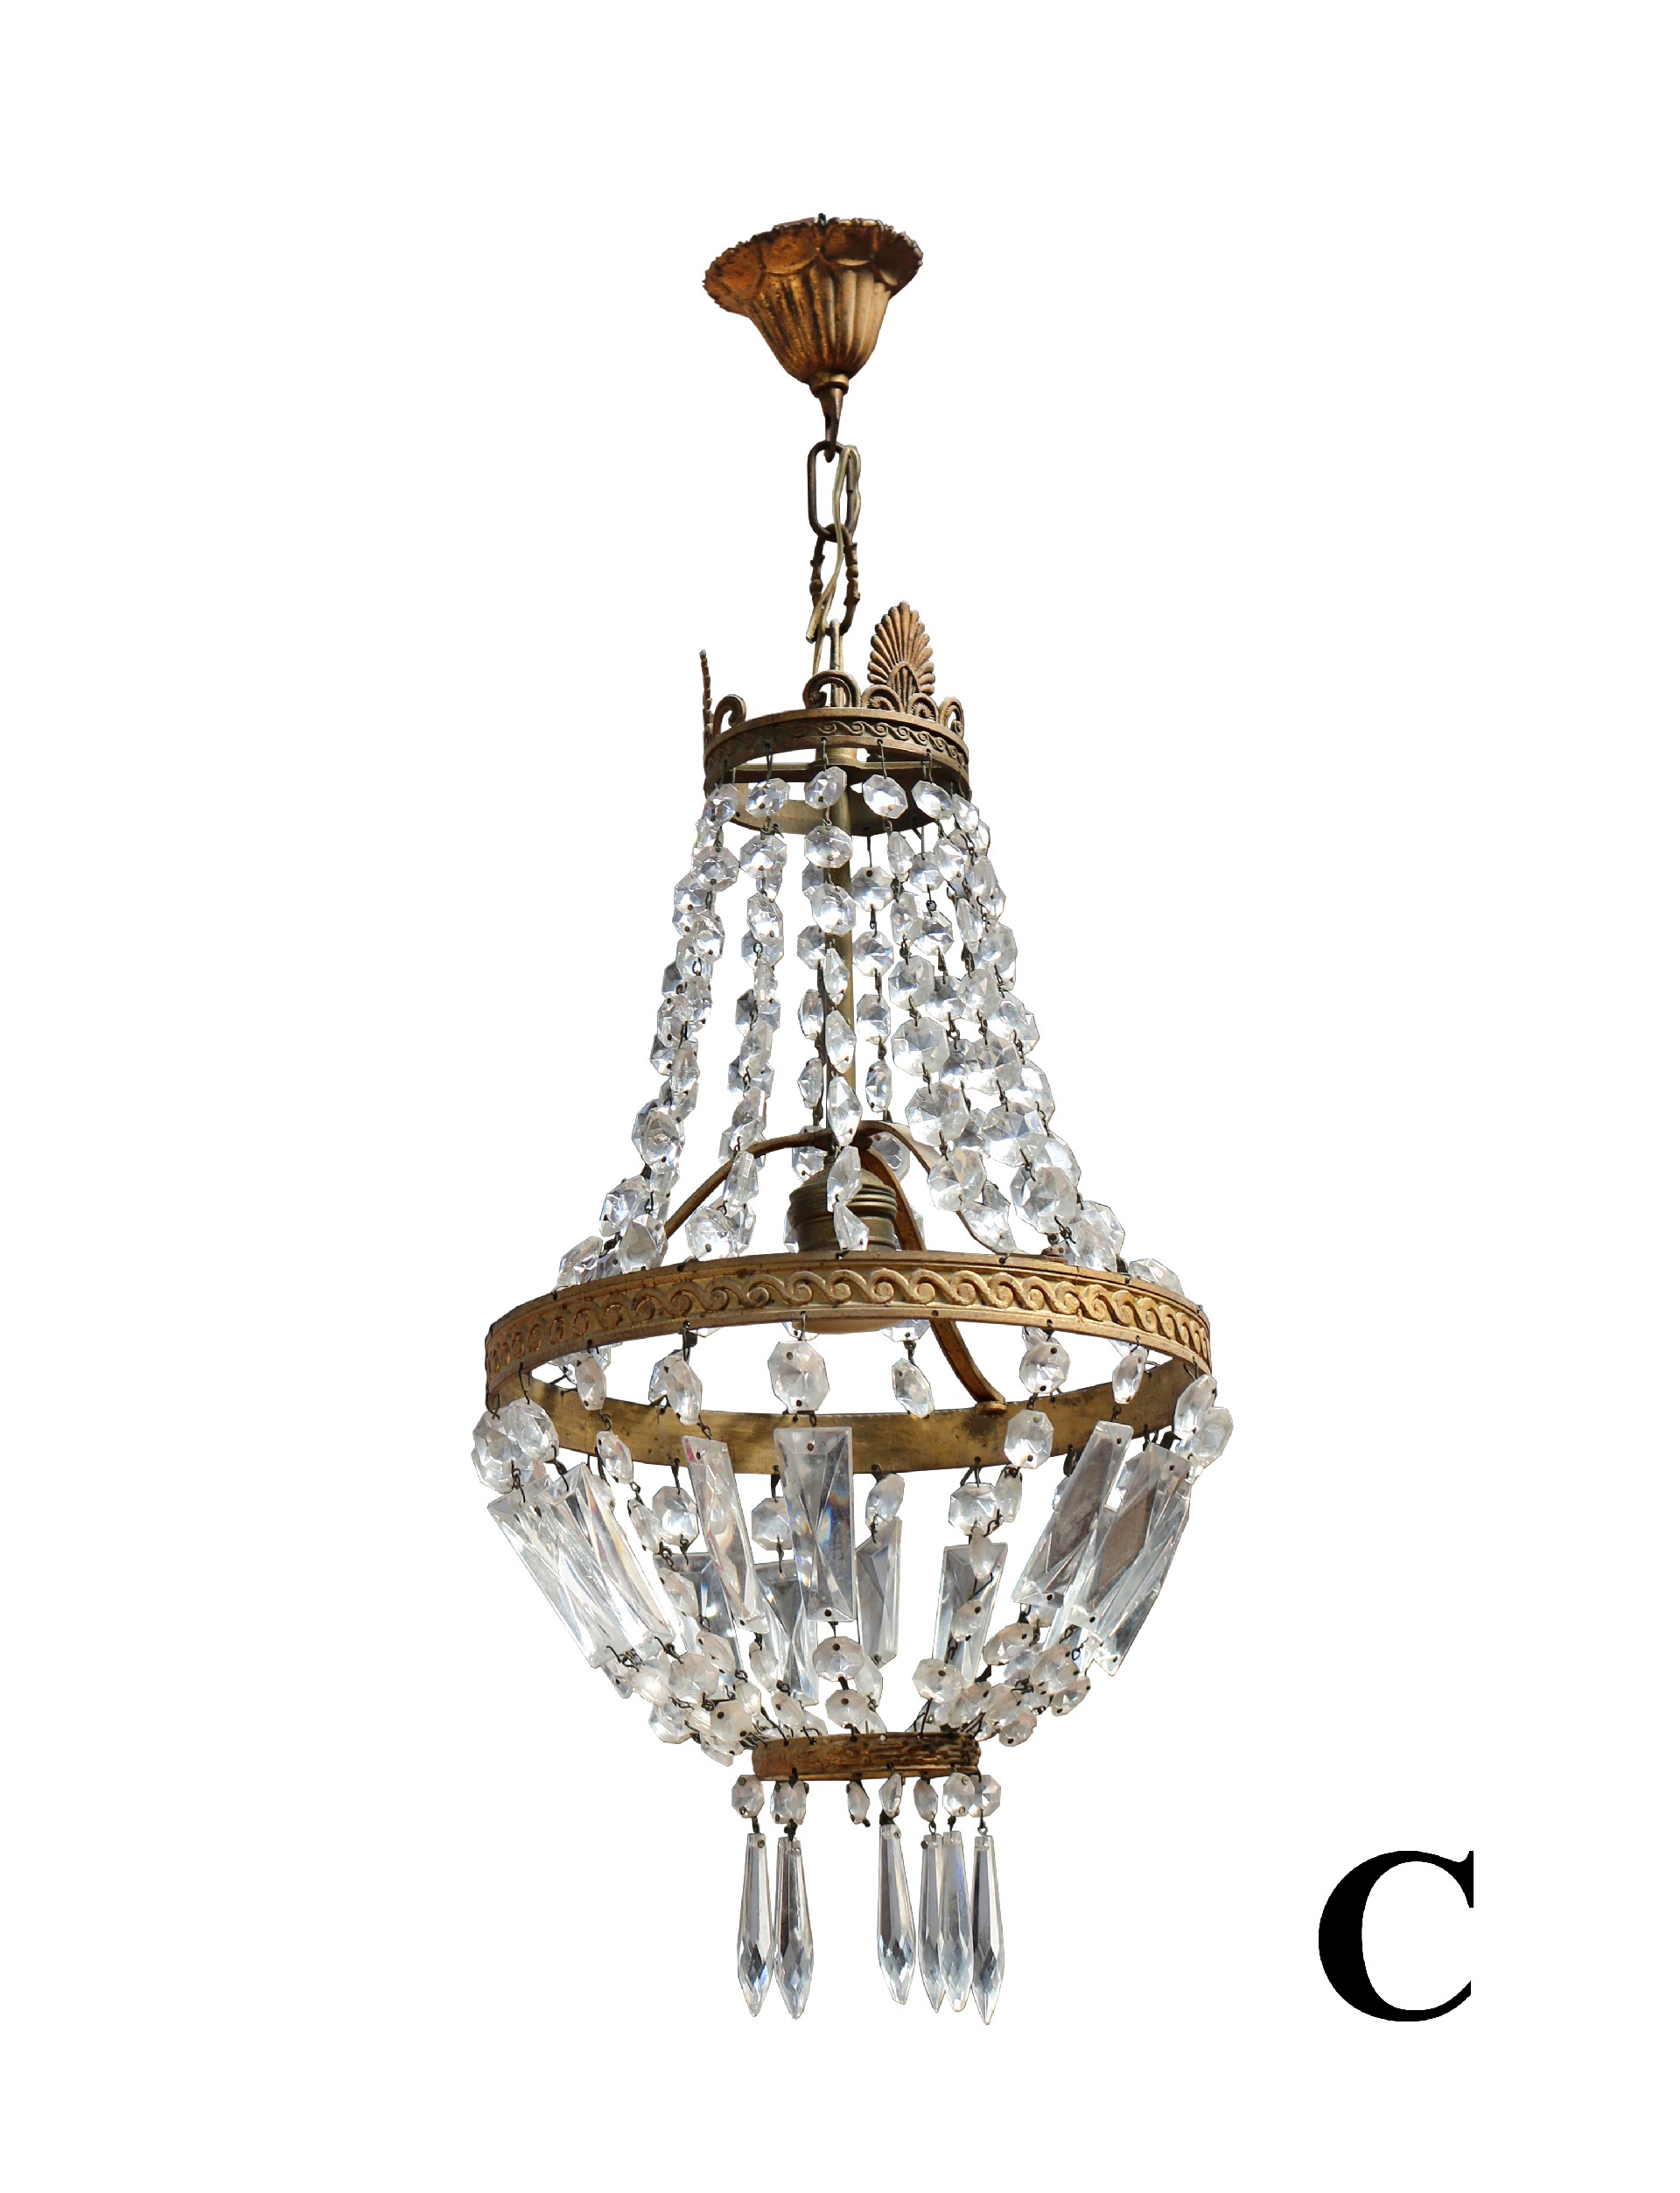 Antichi lampadari in vetro. Epoca 1800. - 1